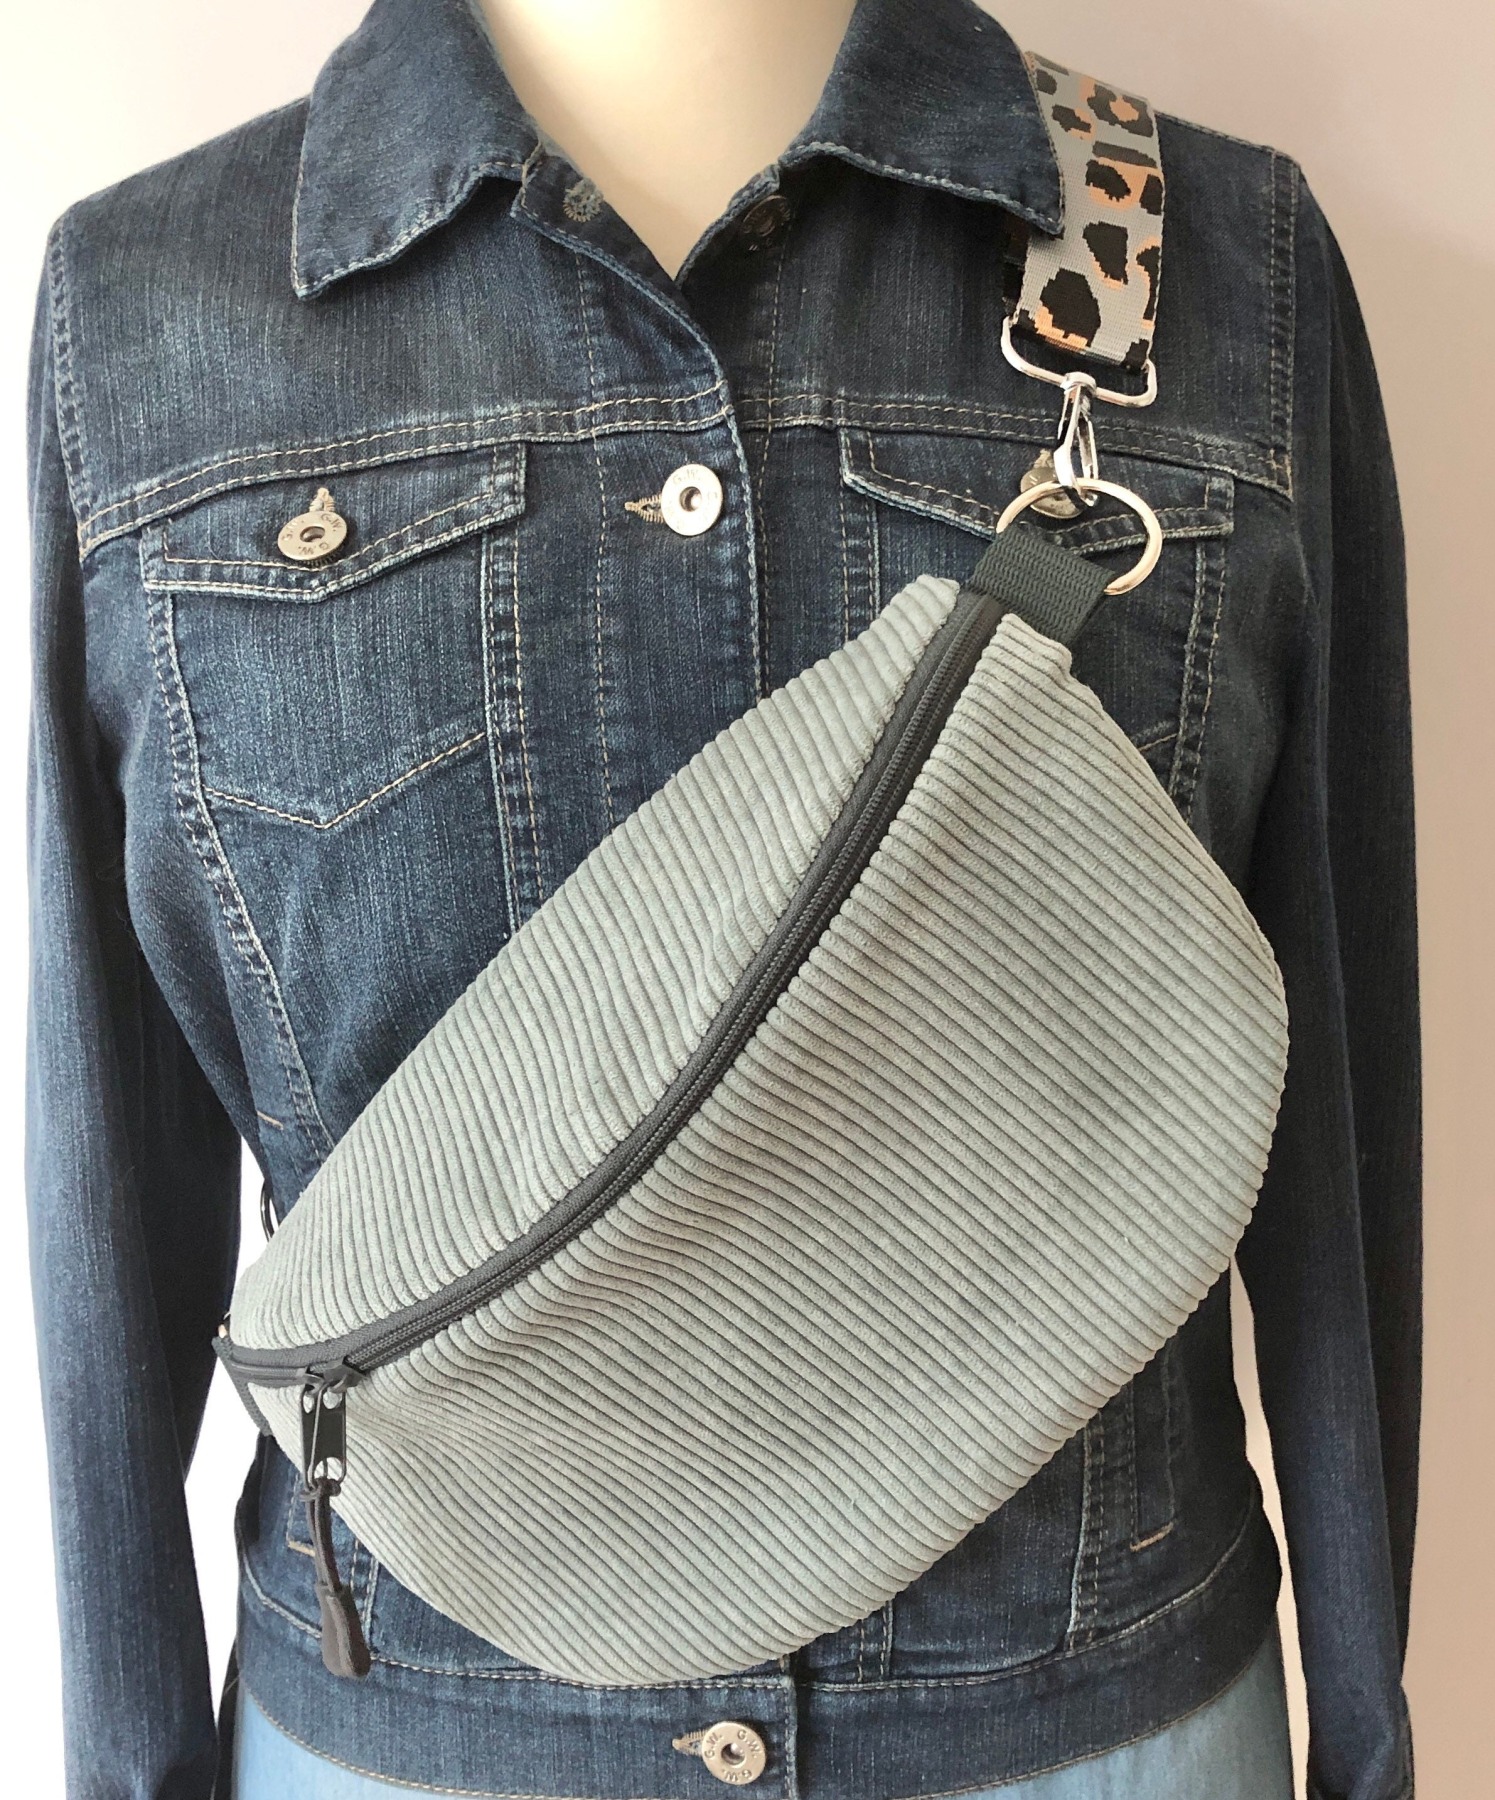 Bauchtasche XL, Crossbag Cord mint, dunkelgrauer Reißverschluss, mit Leogurt grau, Tasche Cord